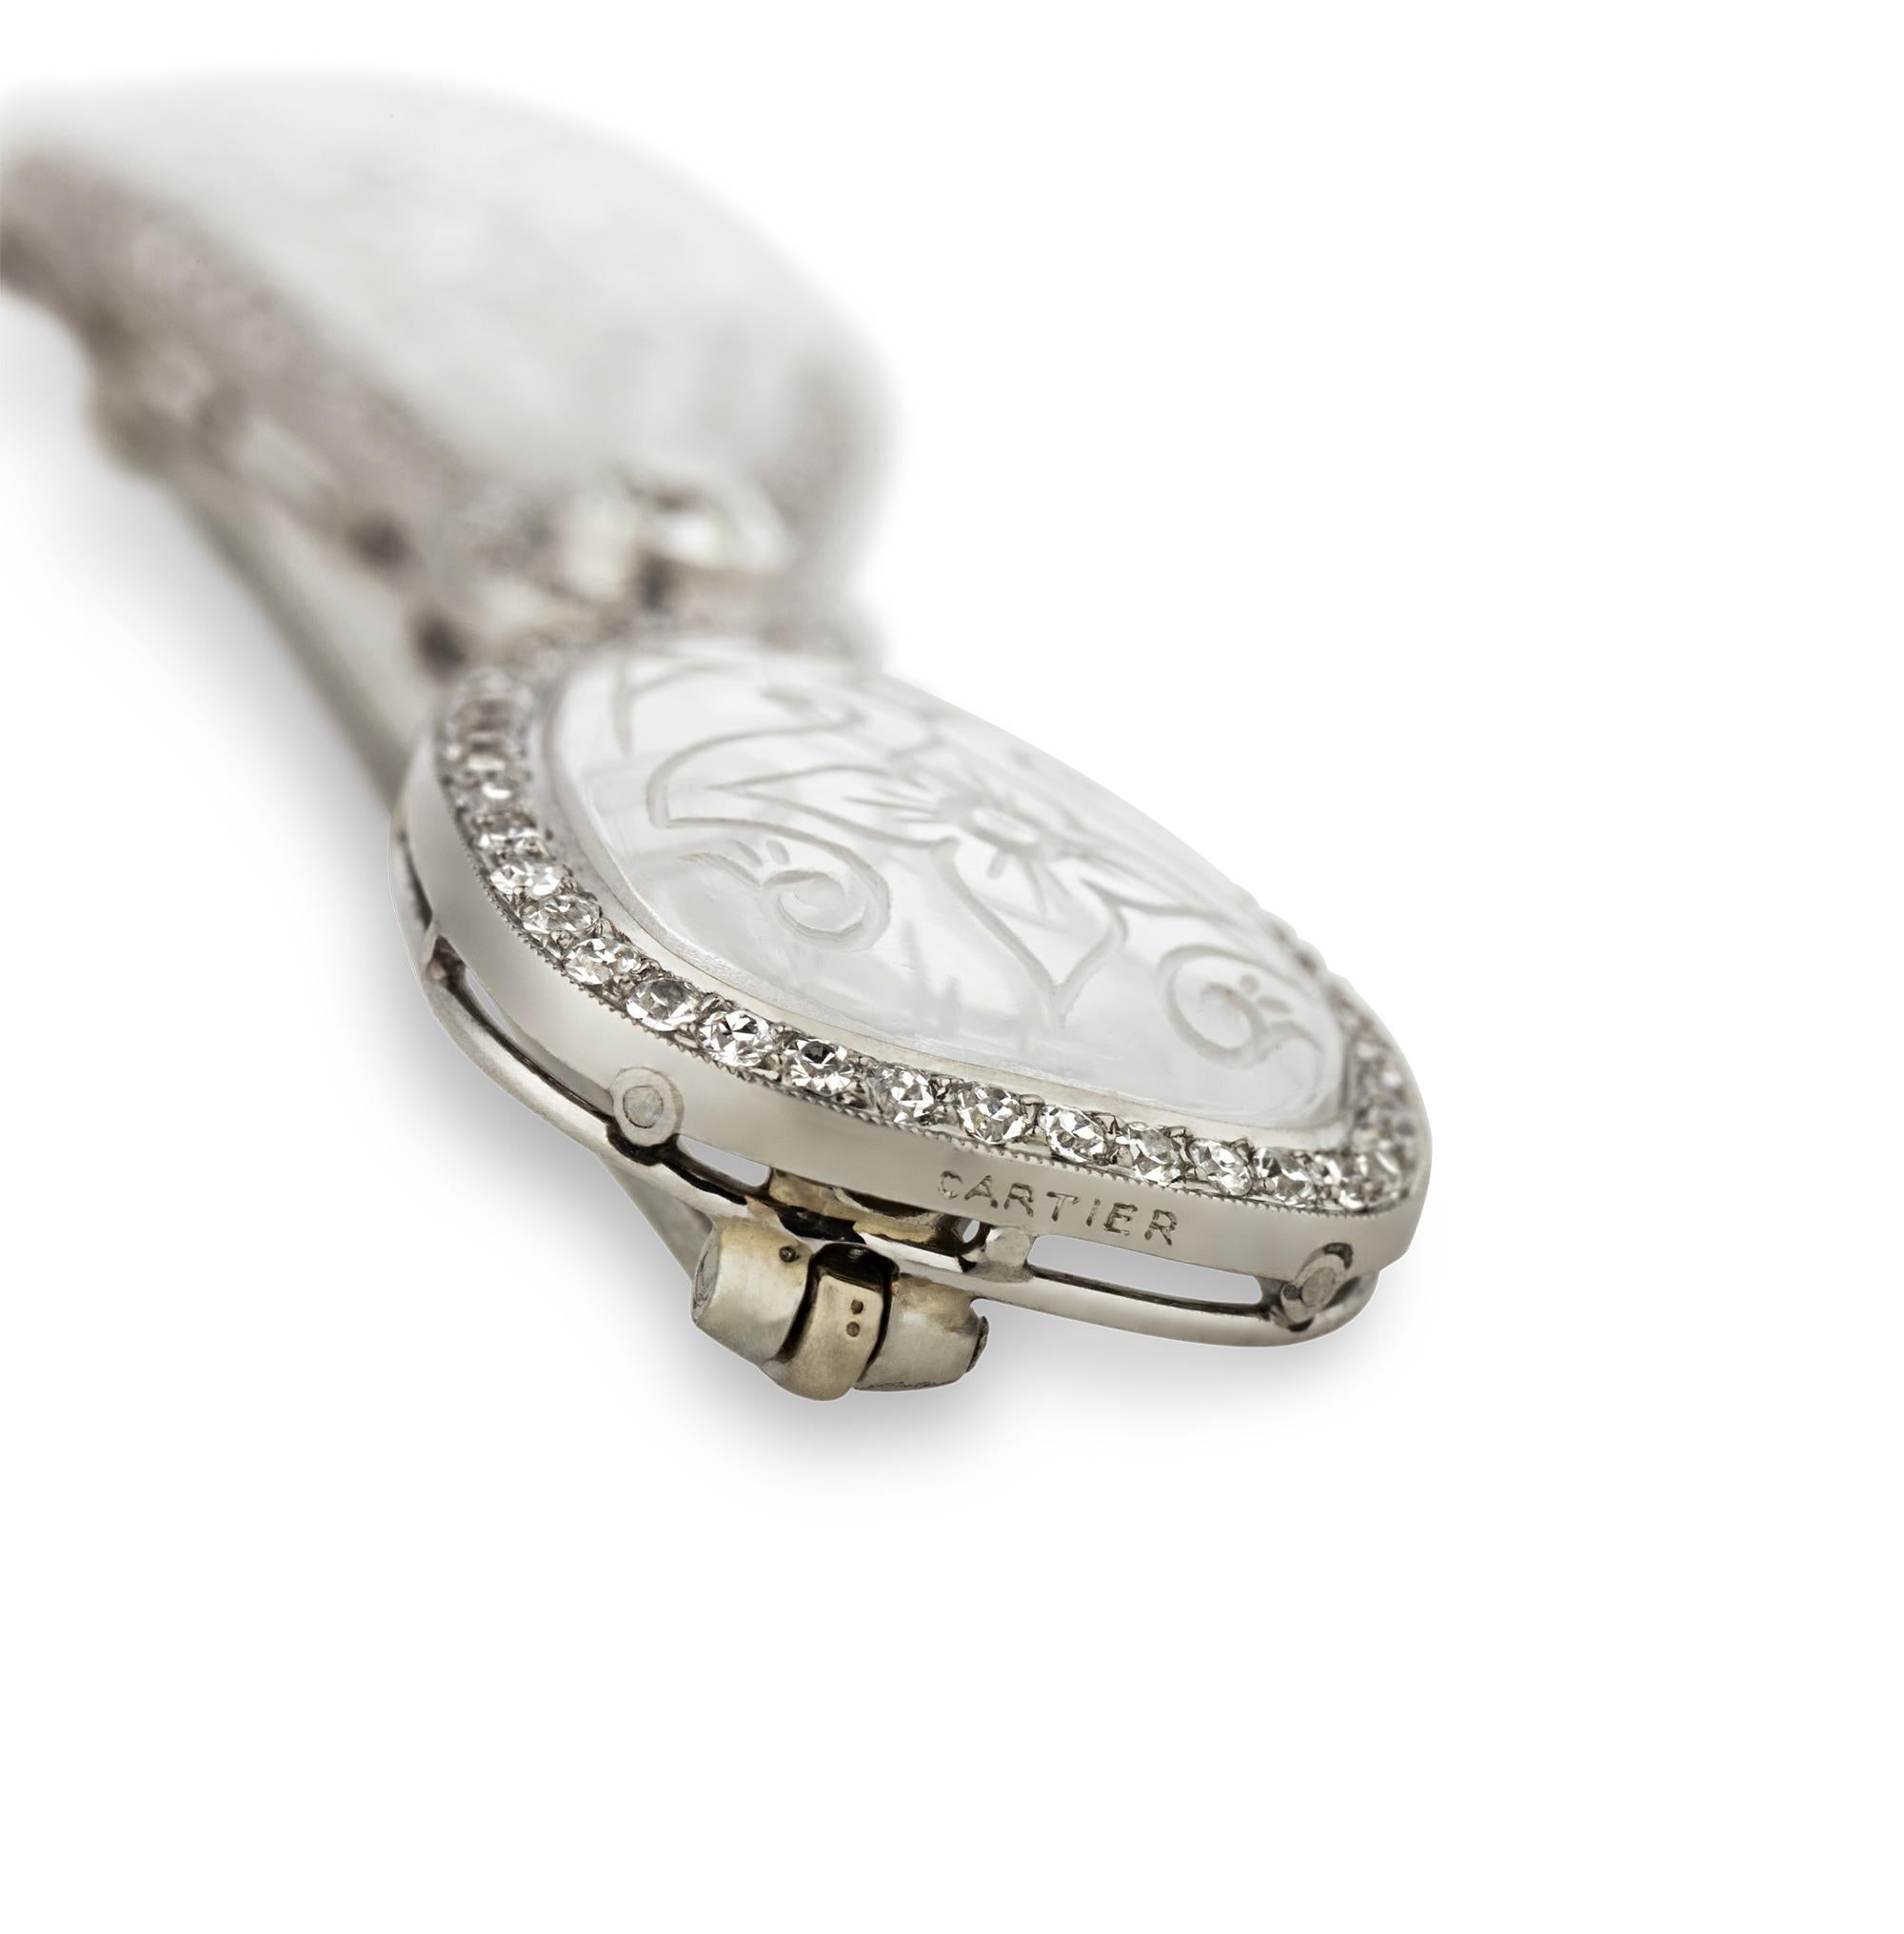 Exhalant la décadence de l'ère Art déco, cette broche est l'œuvre du célèbre joaillier français Cartier. Prenant la forme d'un nœud classique, l'épingle est réalisée en cristal de roche avec des motifs décoratifs délicatement sculptés. Soulignée de